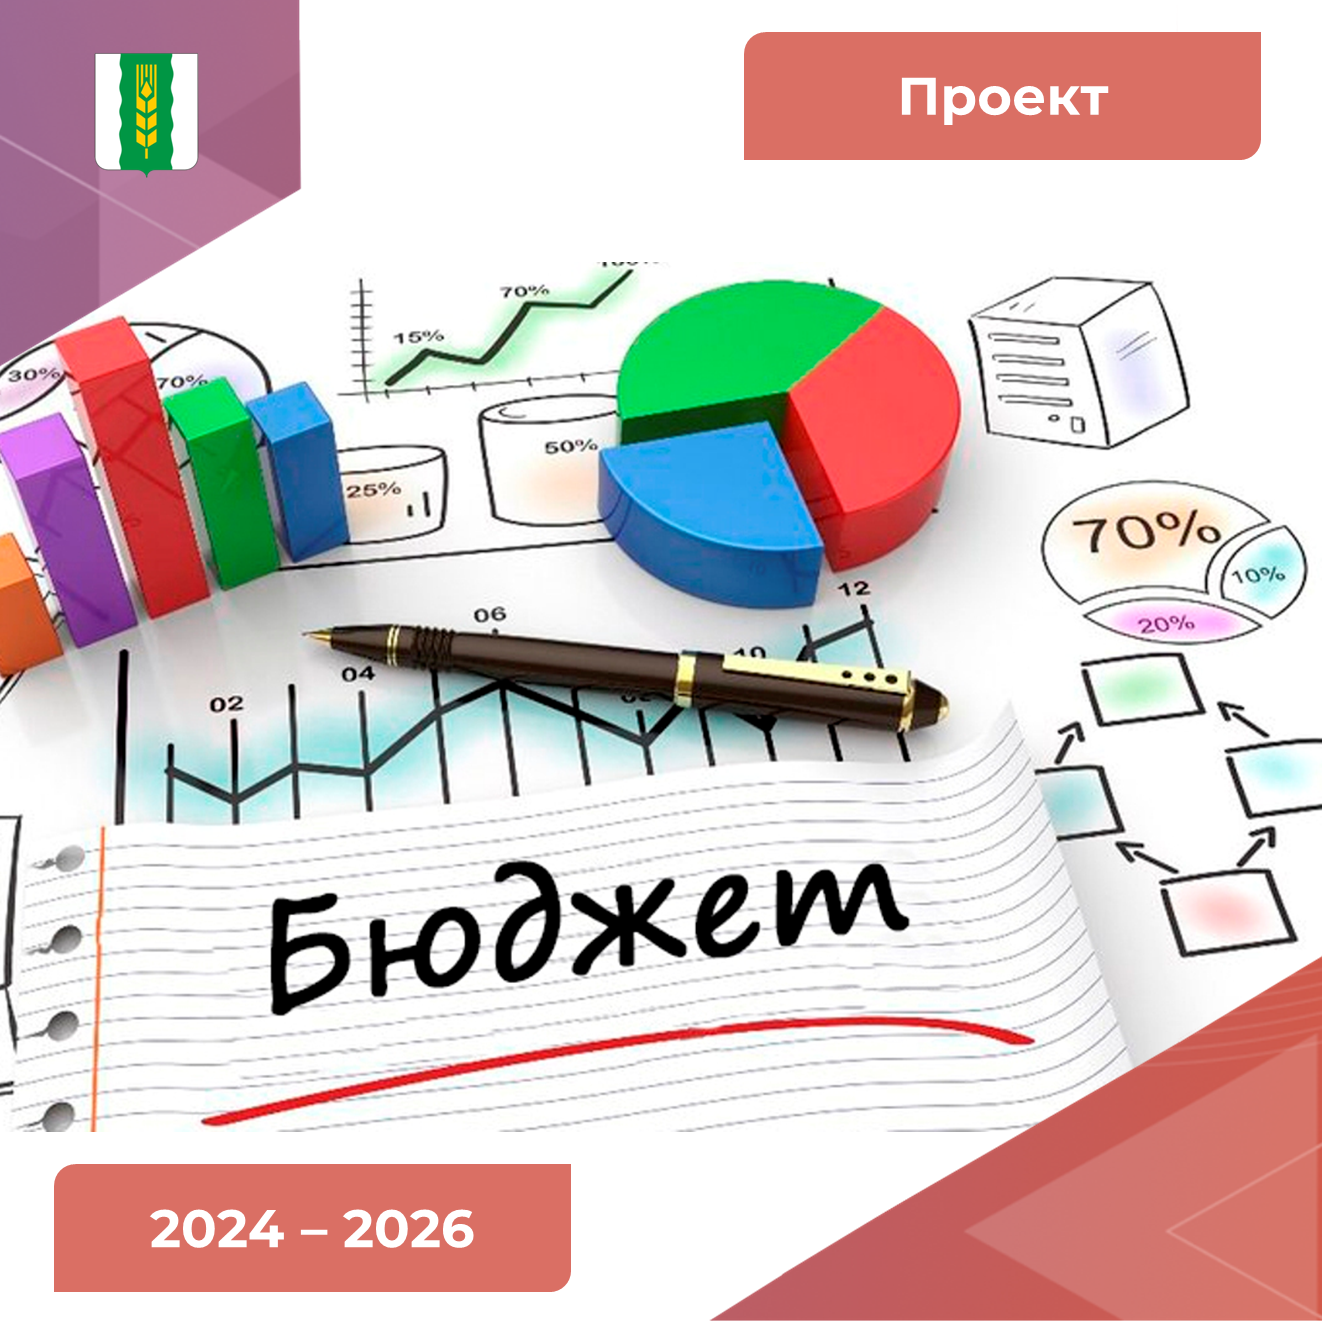 Проект решения о бюджете Марьяновского муниципального района на 2024-2026 годы.